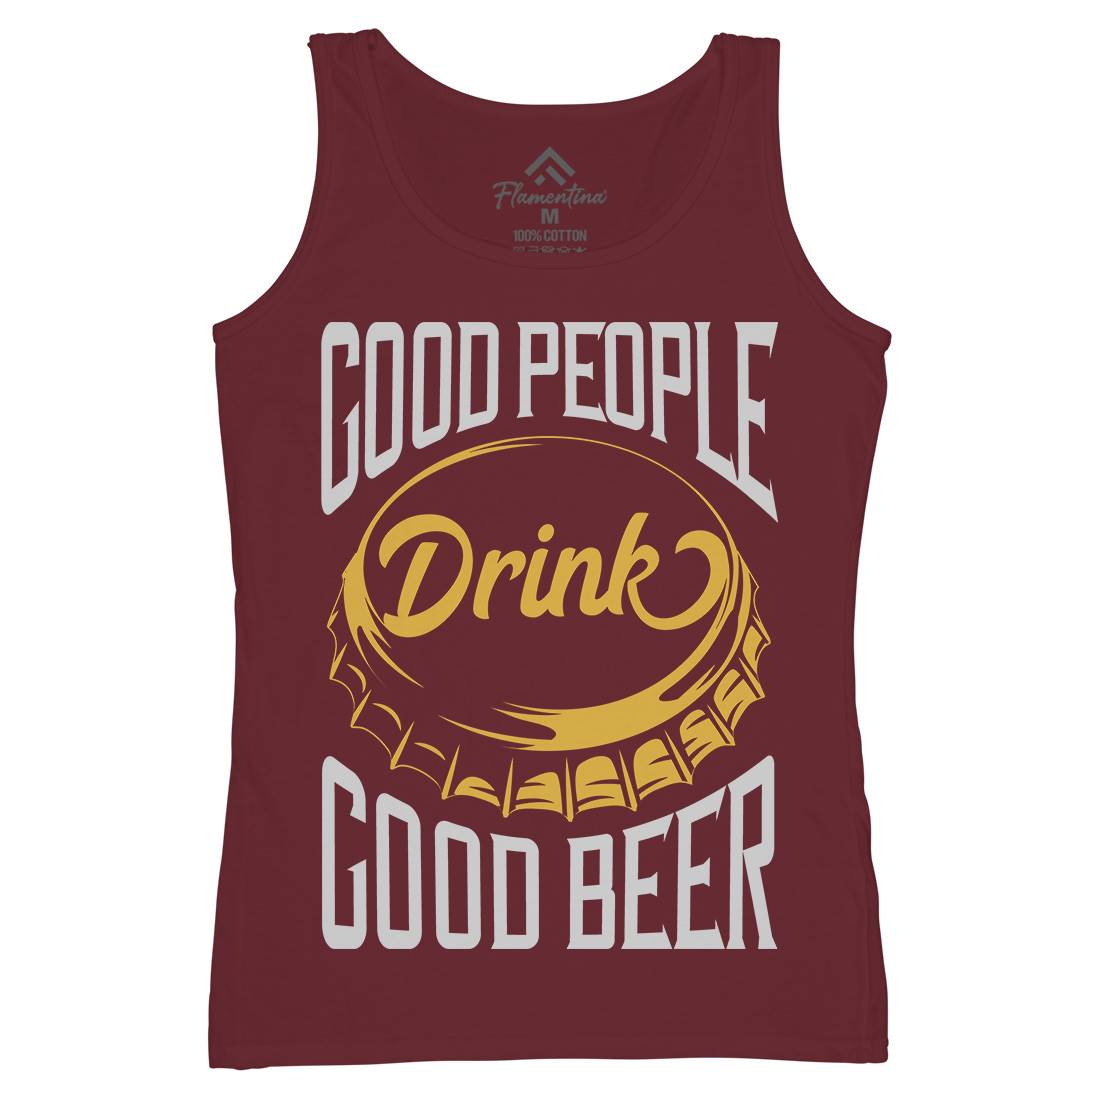 Good People Drink Beer Womens Organic Tank Top Vest Drinks B287